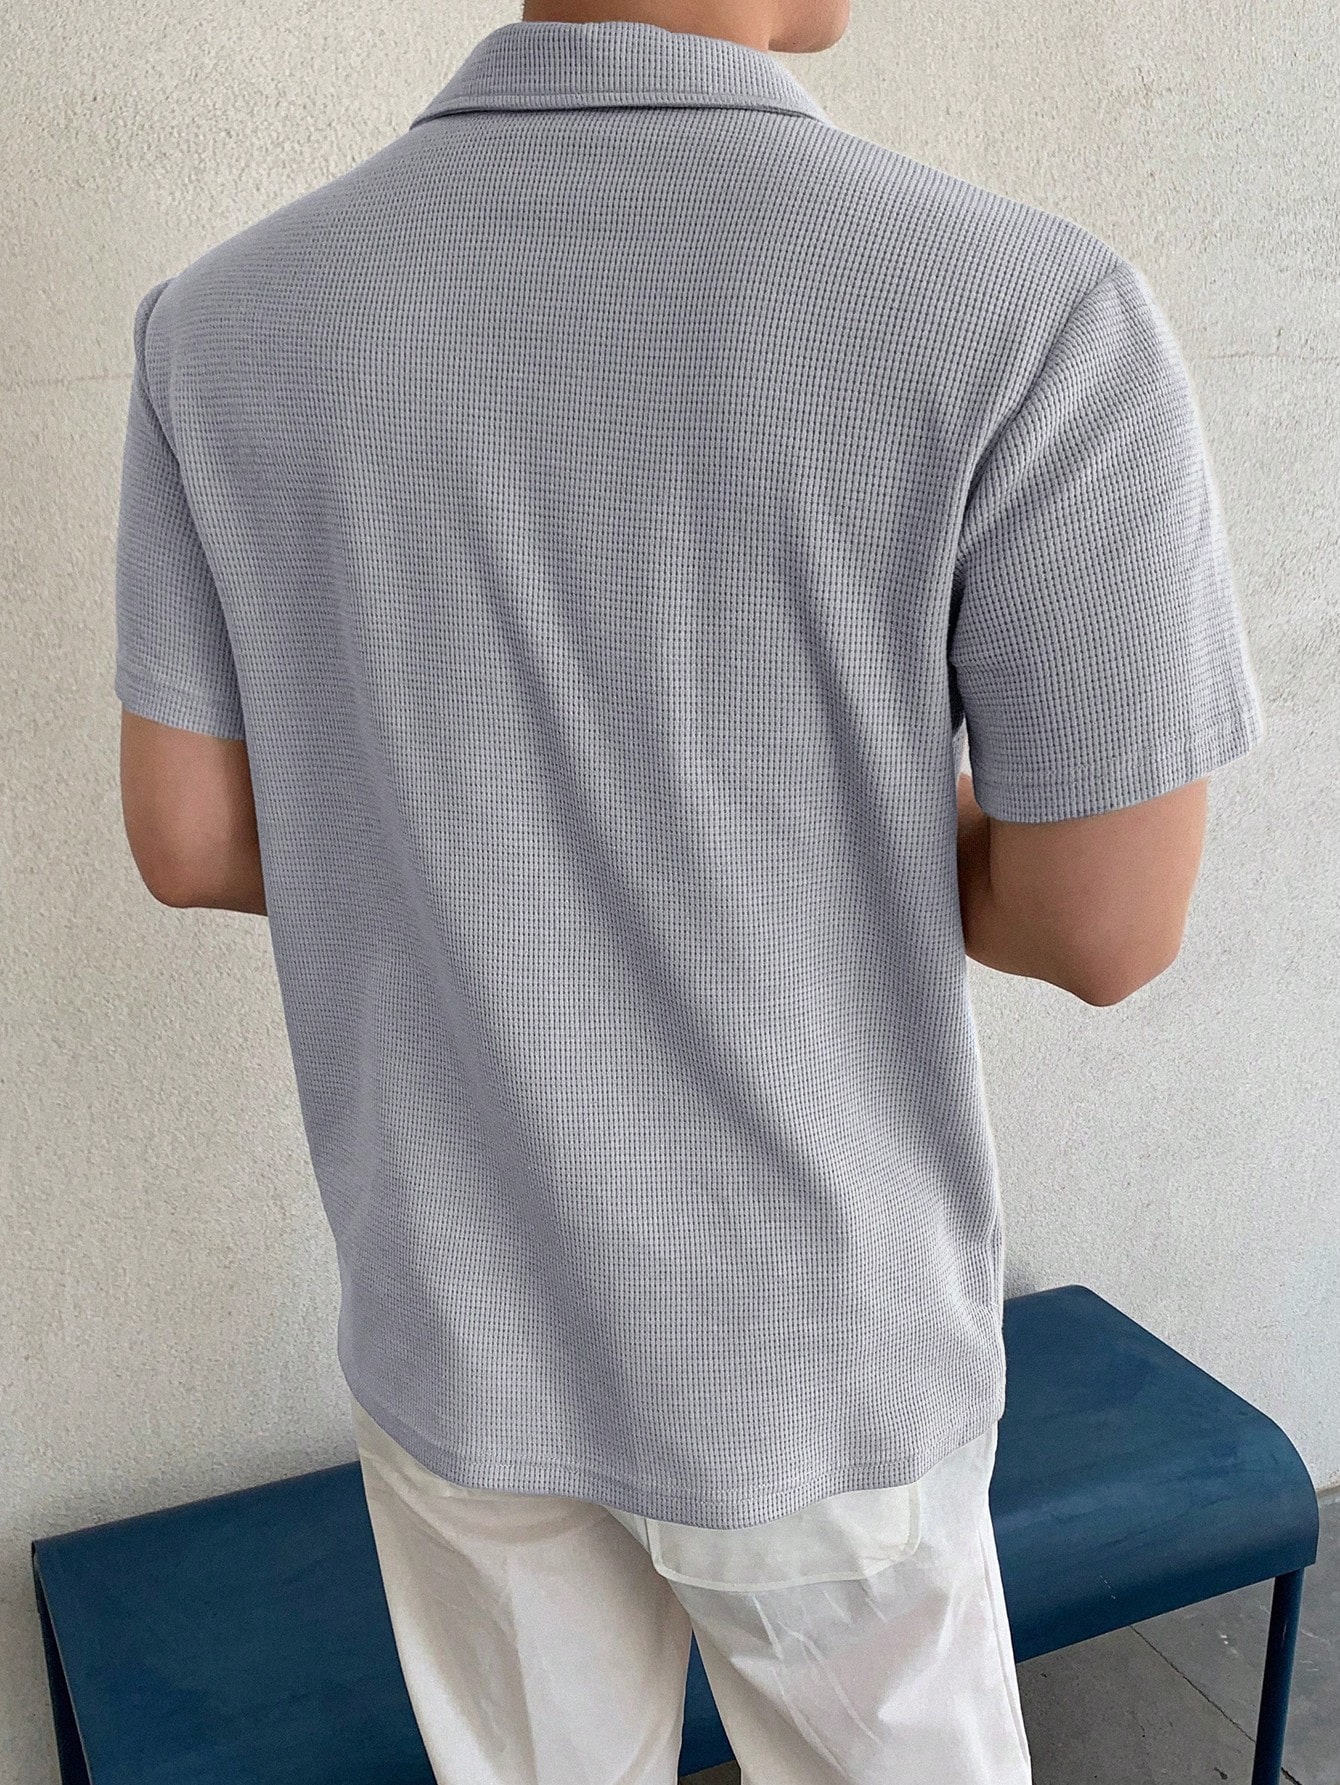 DAZY Мужская однотонная рубашка поло с коротким рукавом на лето, светло-серый